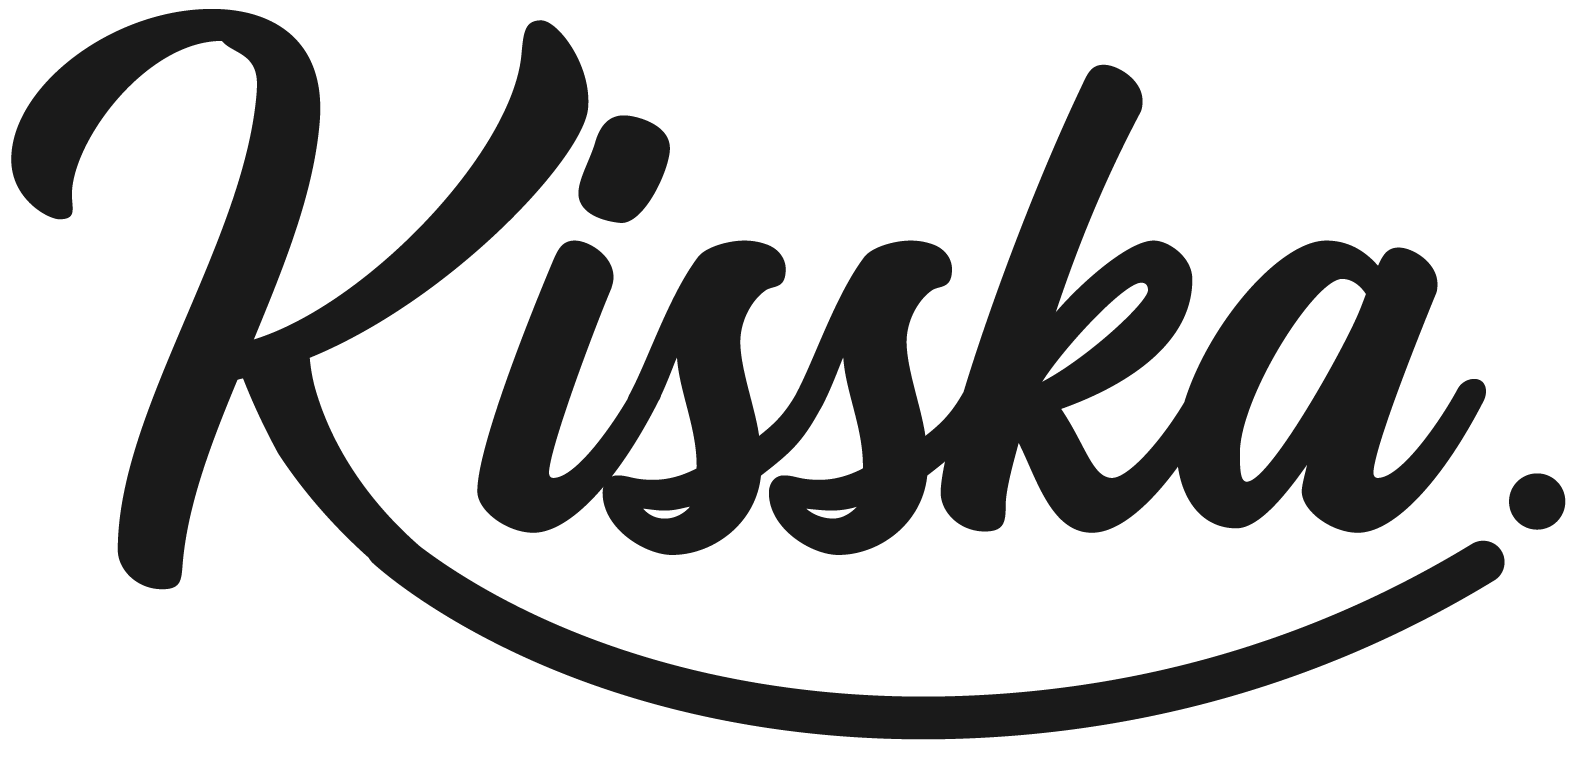 Kisska